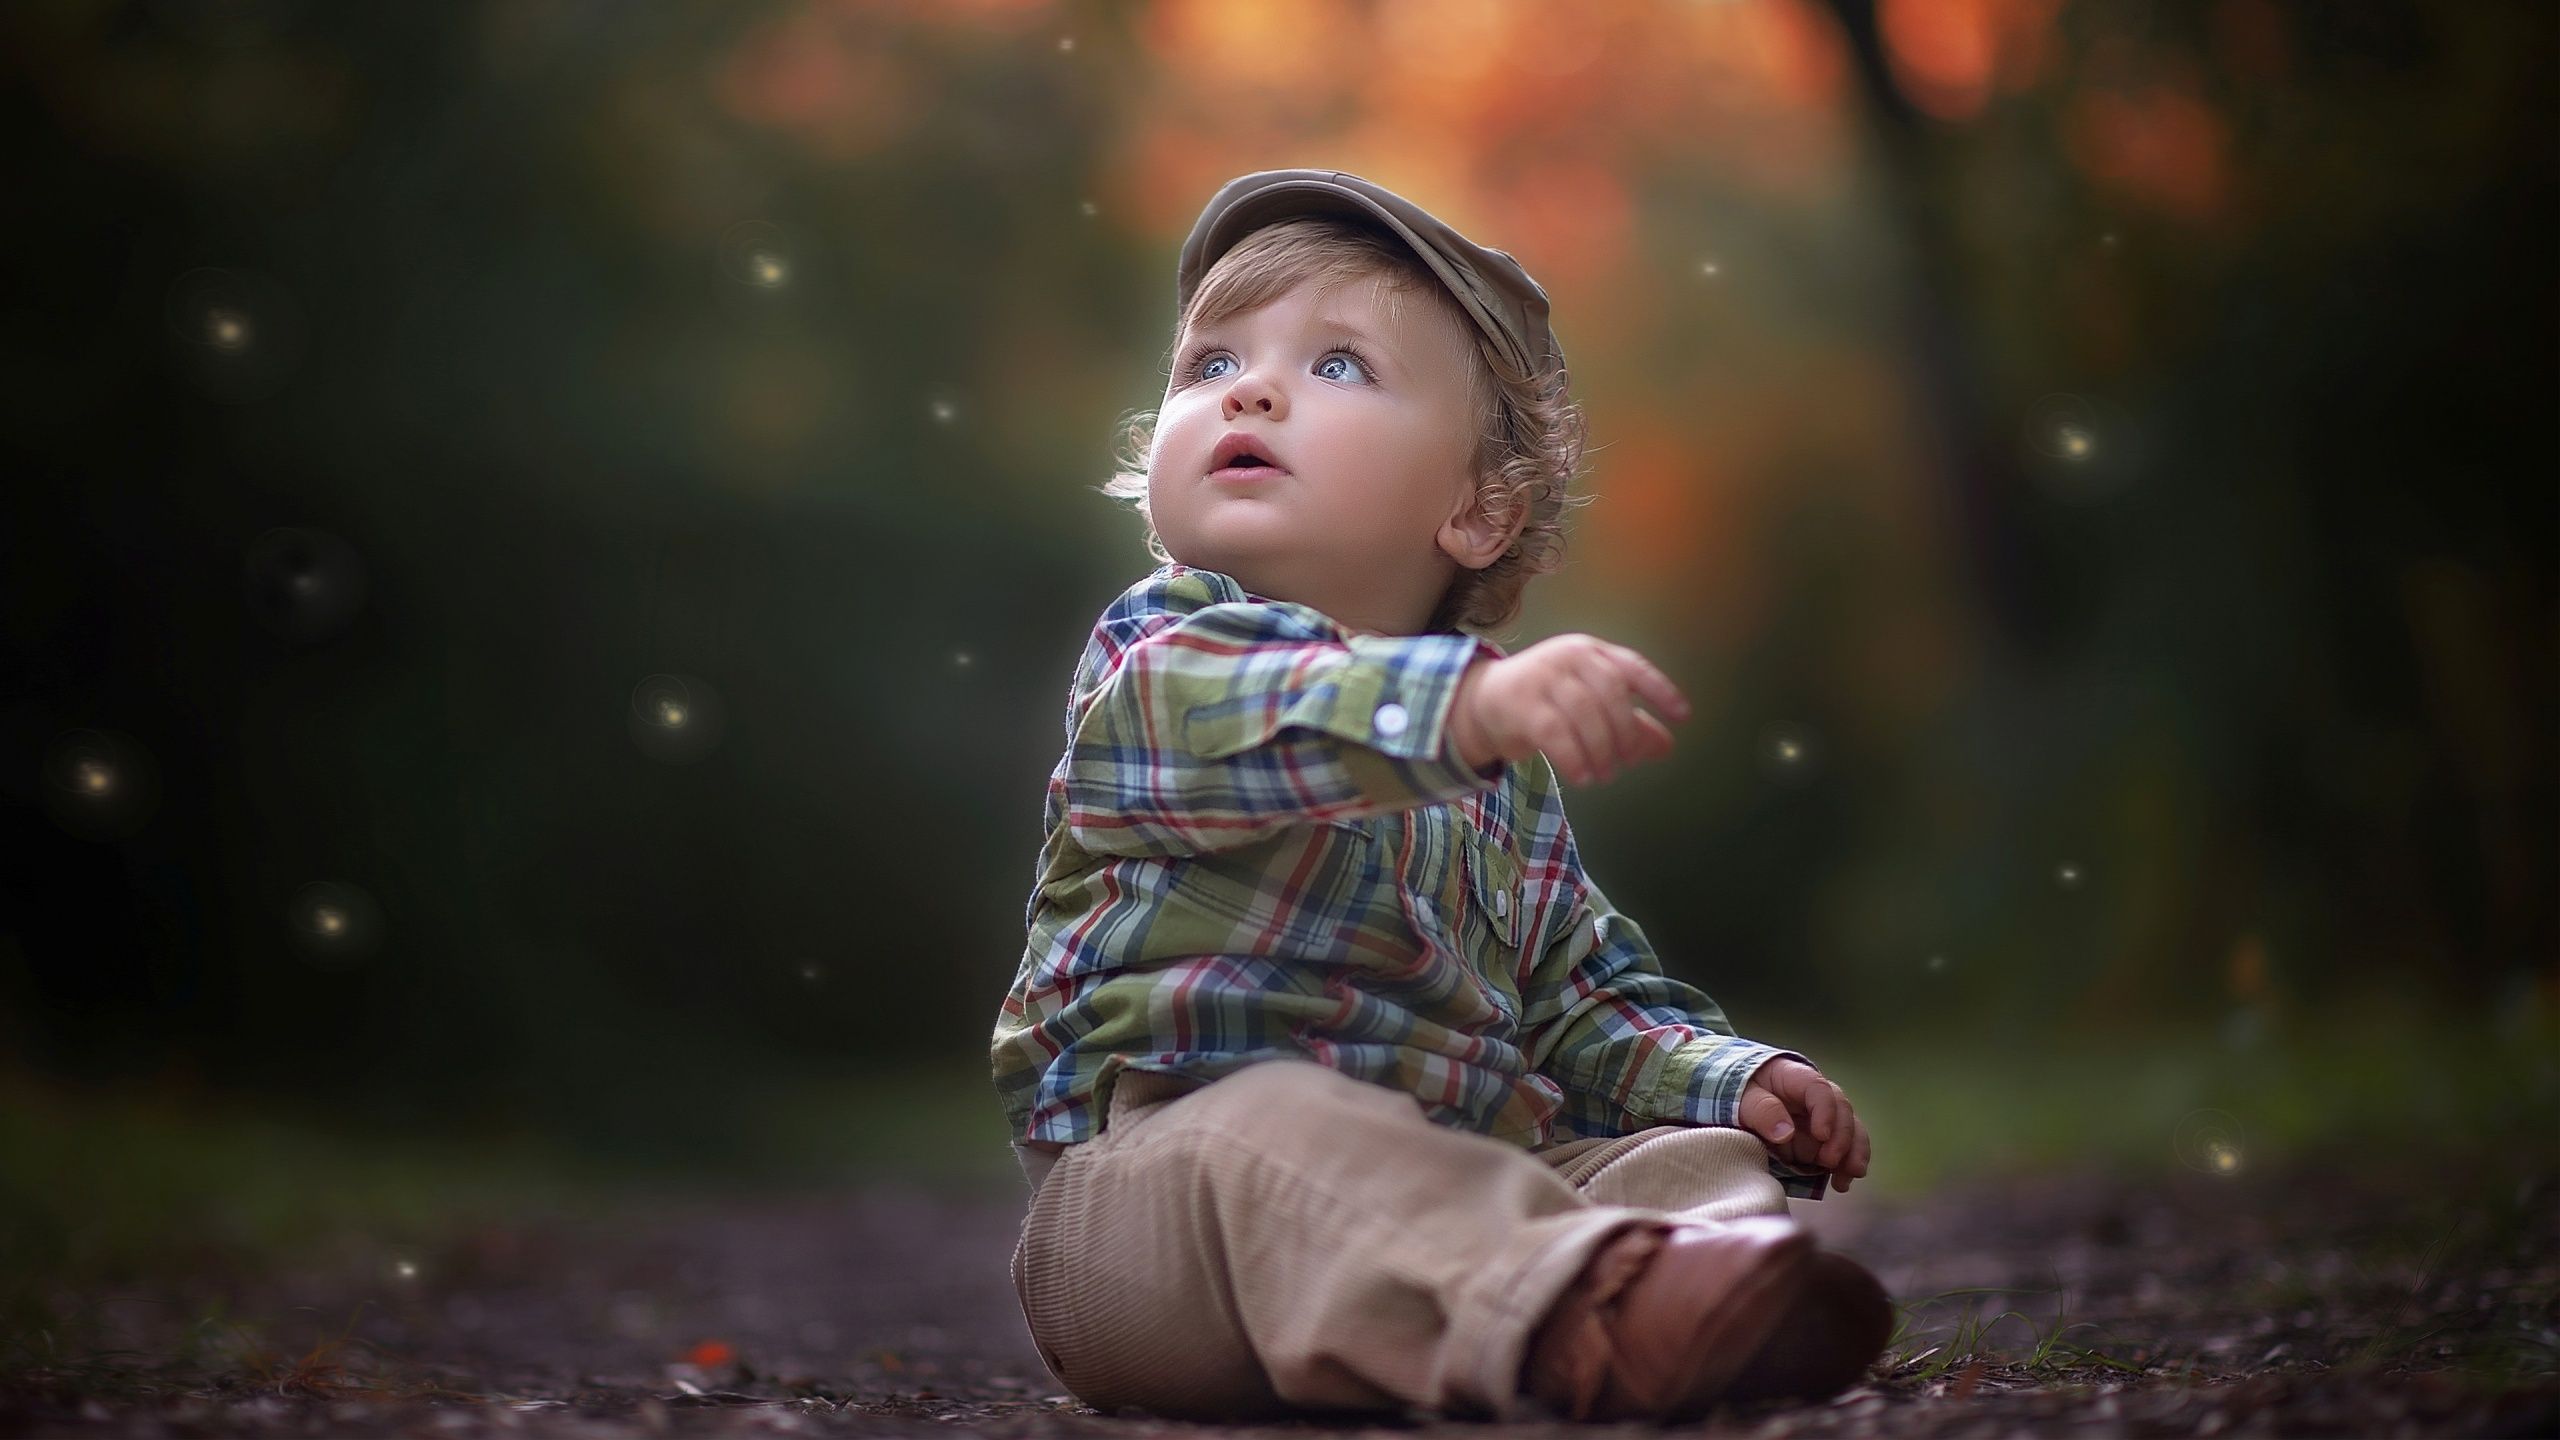 Cute Little Boy Wallpaper in jpg format for free download